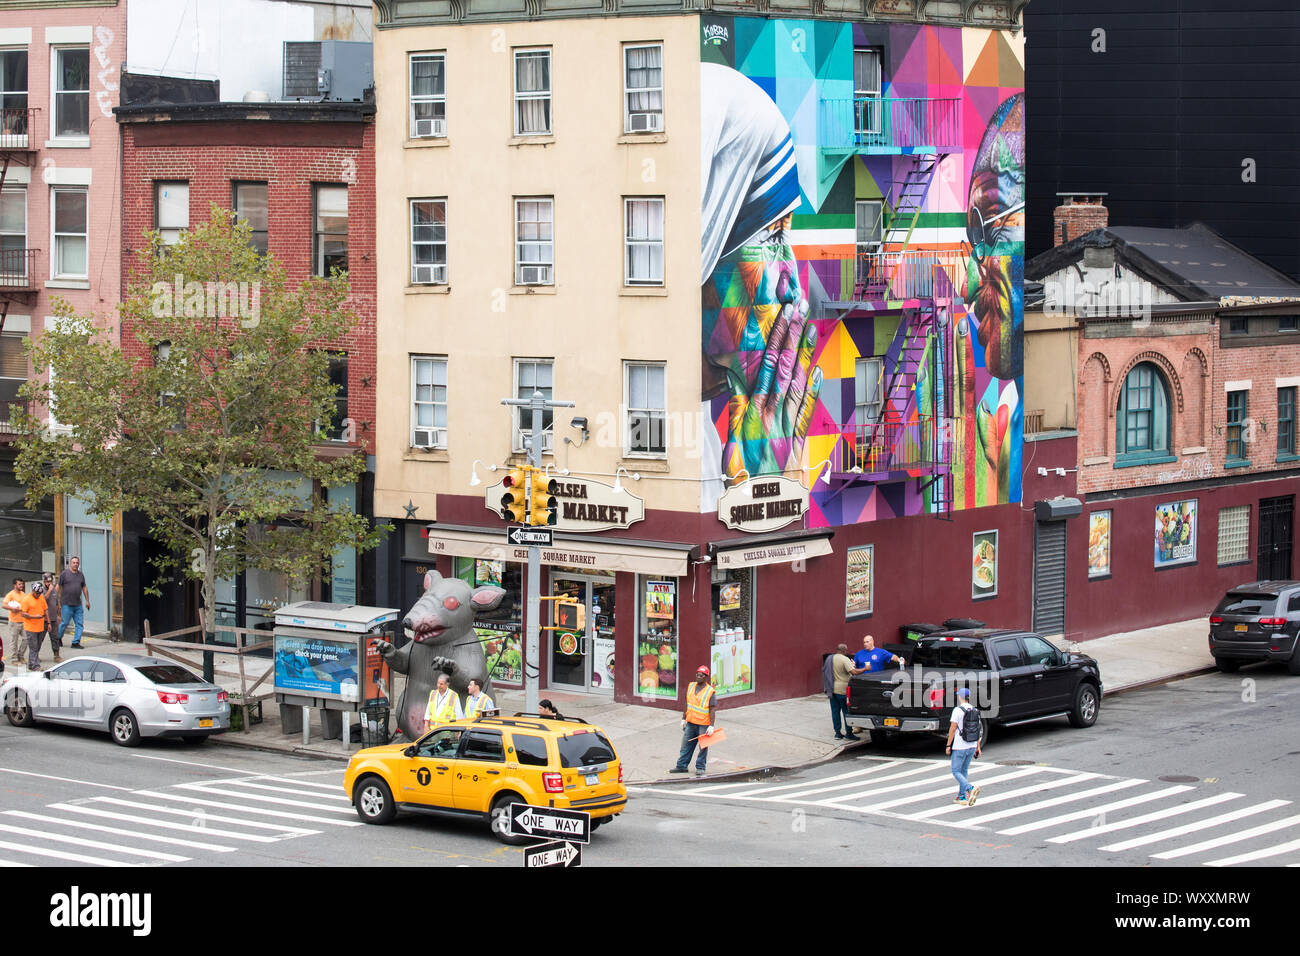 Coin de rue scène avec taxi jaune, feux de circulation, peinture murale et Chelsea Market Square store at West 18th Street et 10th Avenue à New York City, USA Banque D'Images